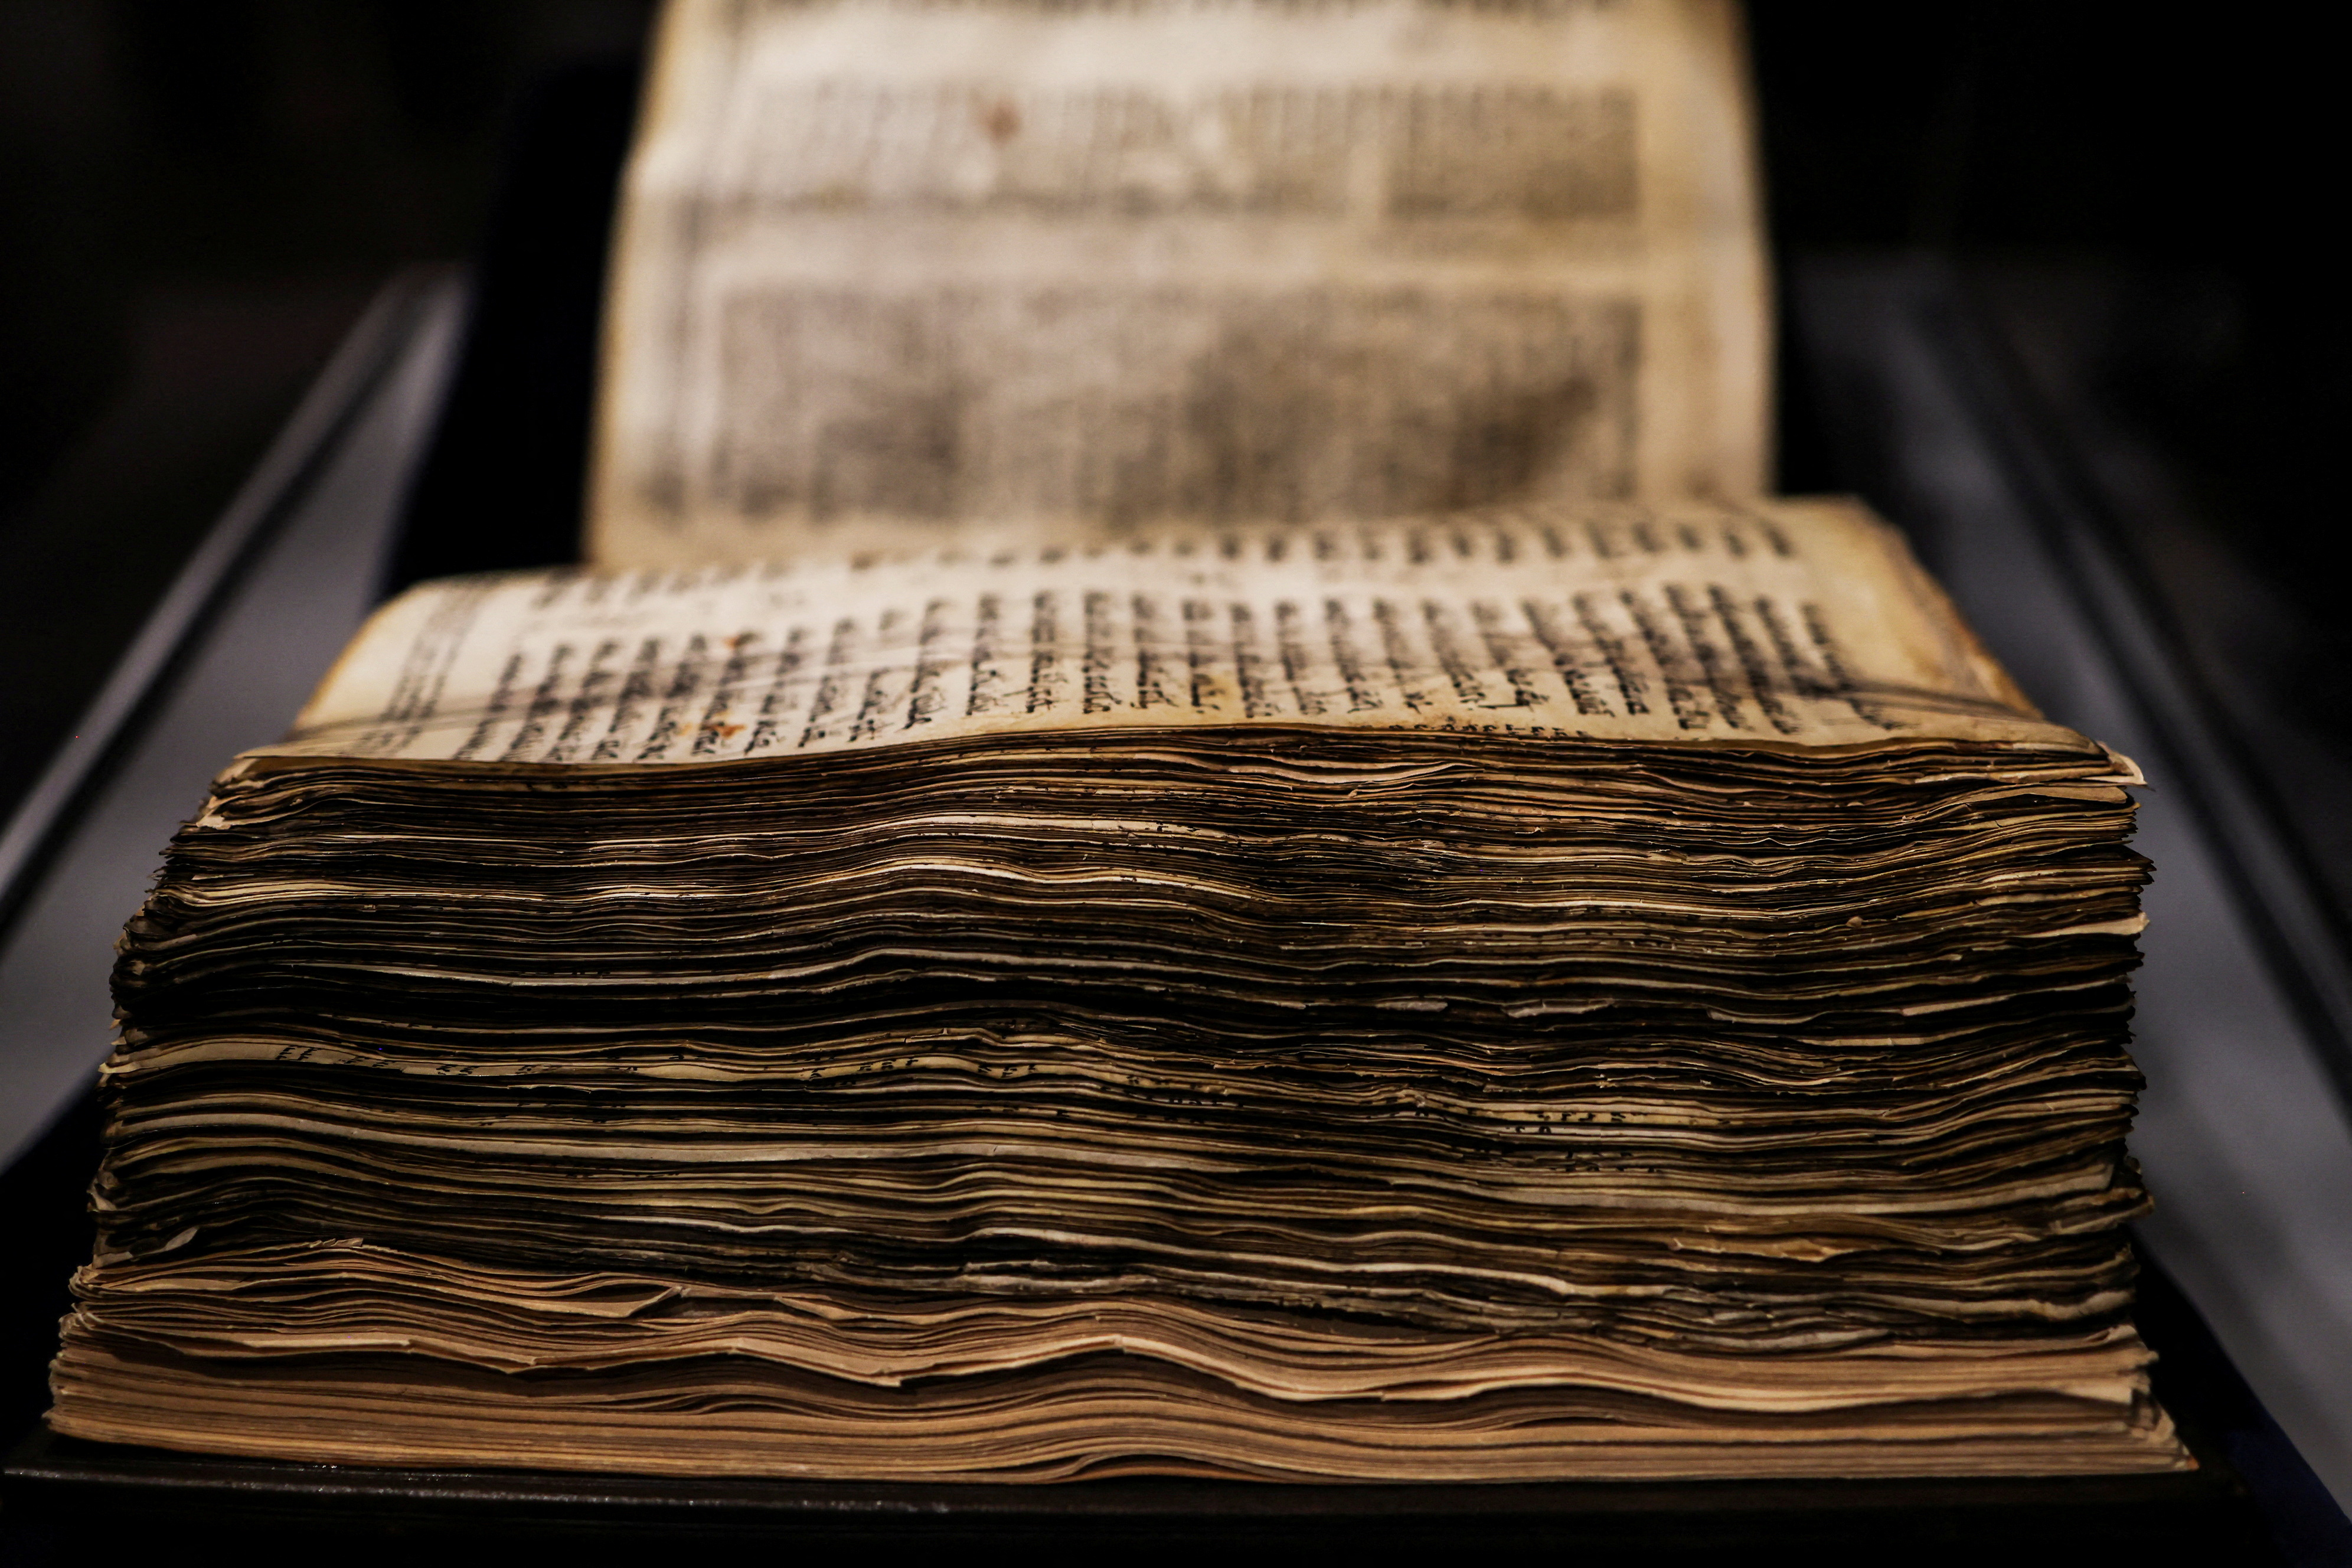 La biblia hebraica más completa y antigua, a subasta en Sotheby's a partir  de 30 millones